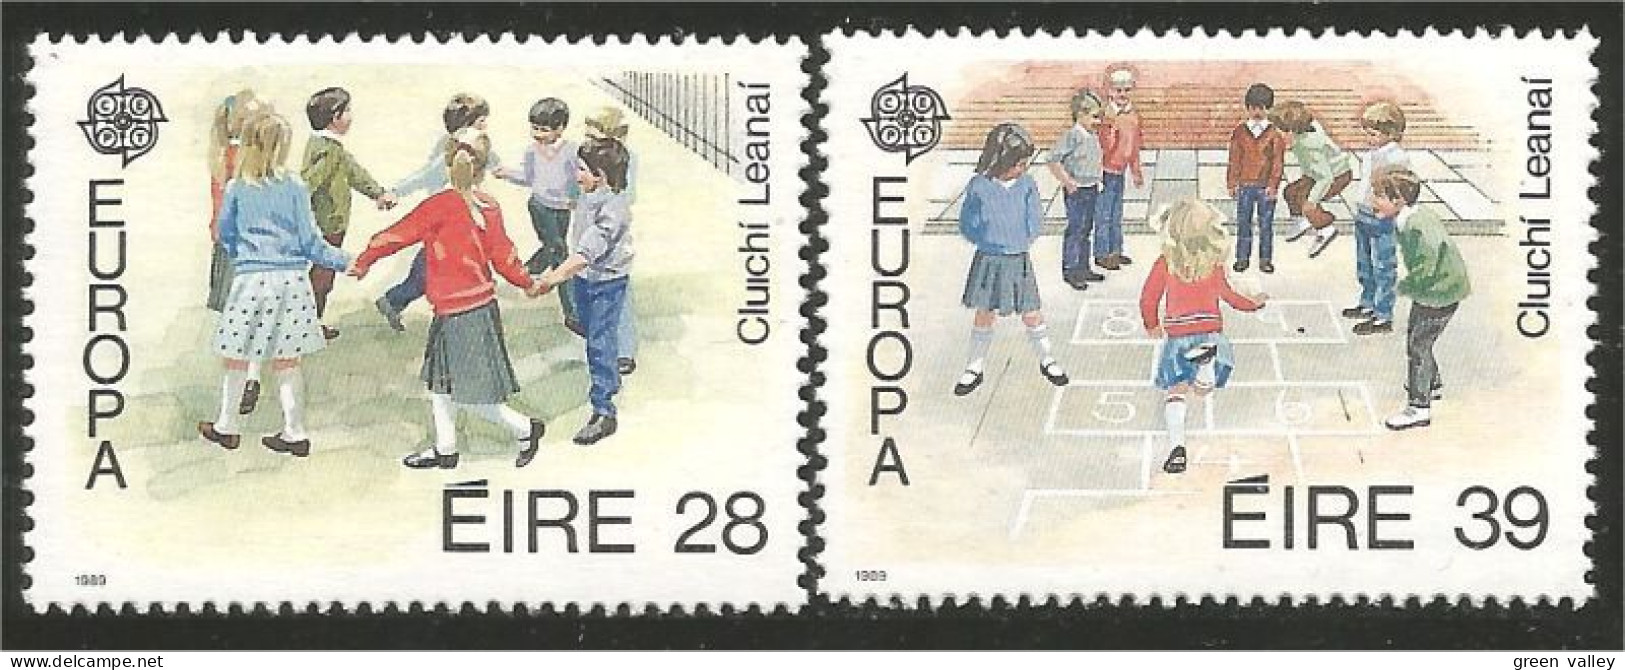 EU89-5b EUROPA-CEPT 1989 Irlande Jeux Enfants Children Games Kinderspiele MNH ** Neuf SC - Non Classés